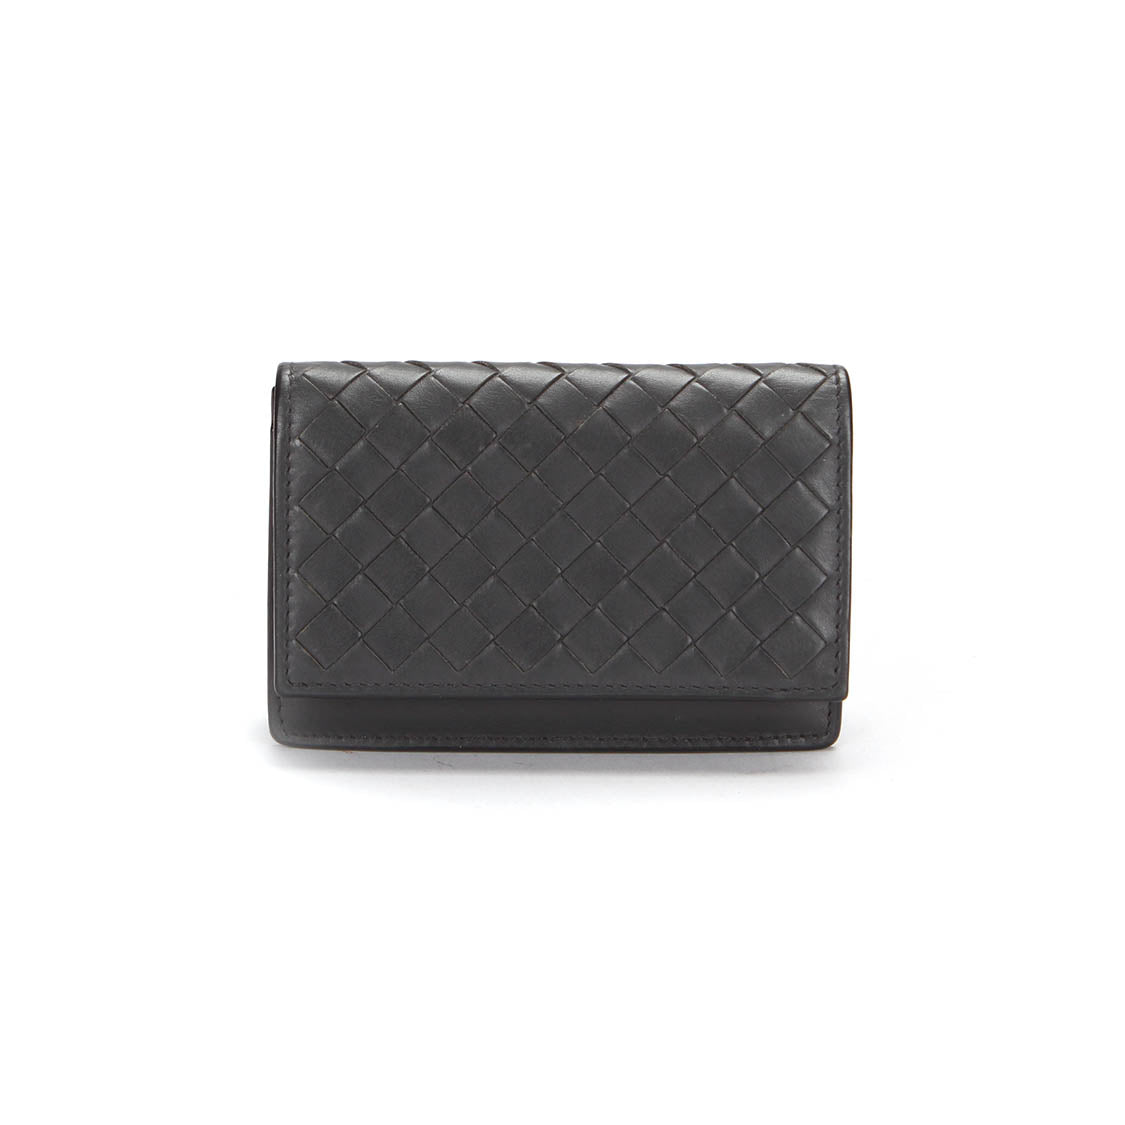 Intercciato Leather Small Wallet